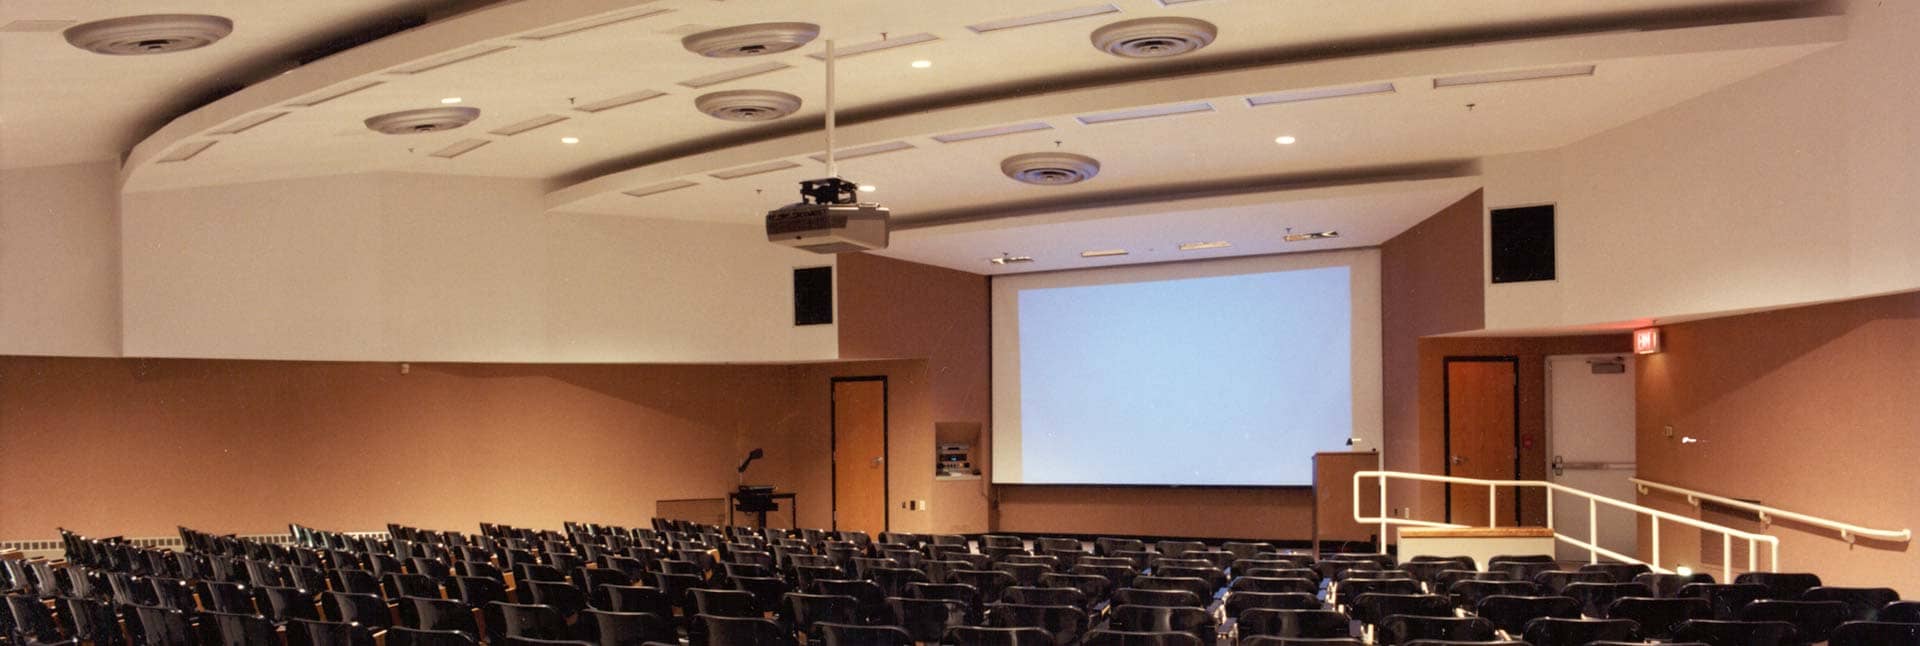 Allen Auditorium at the University of Missouri